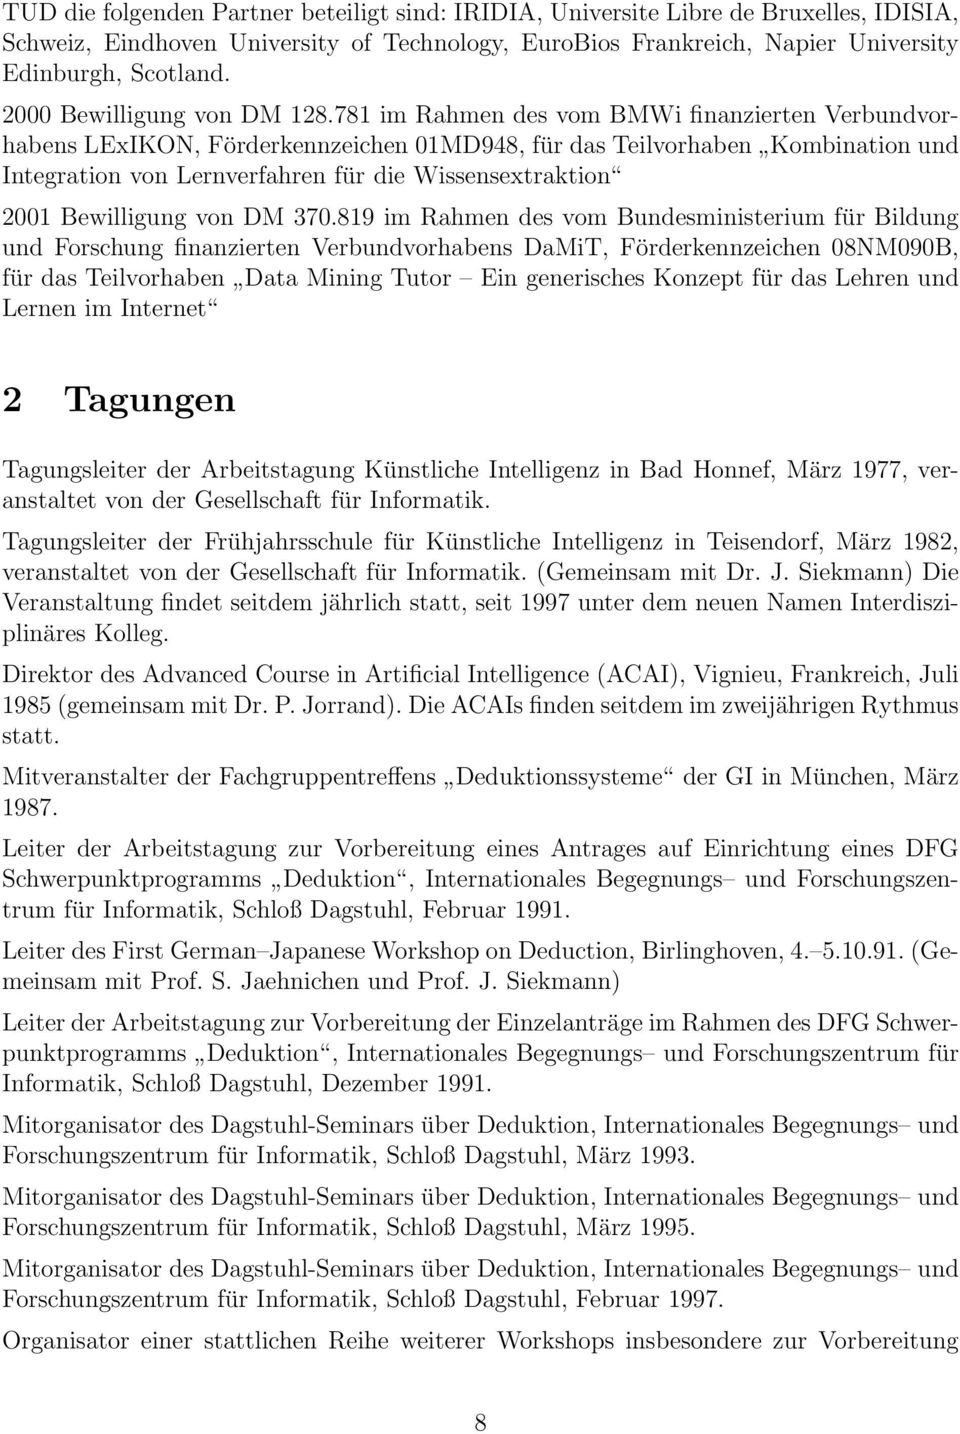 781 im Rahmen des vom BMWi finanzierten Verbundvorhabens LExIKON, Förderkennzeichen 01MD948, für das Teilvorhaben Kombination und Integration von Lernverfahren für die Wissensextraktion 2001